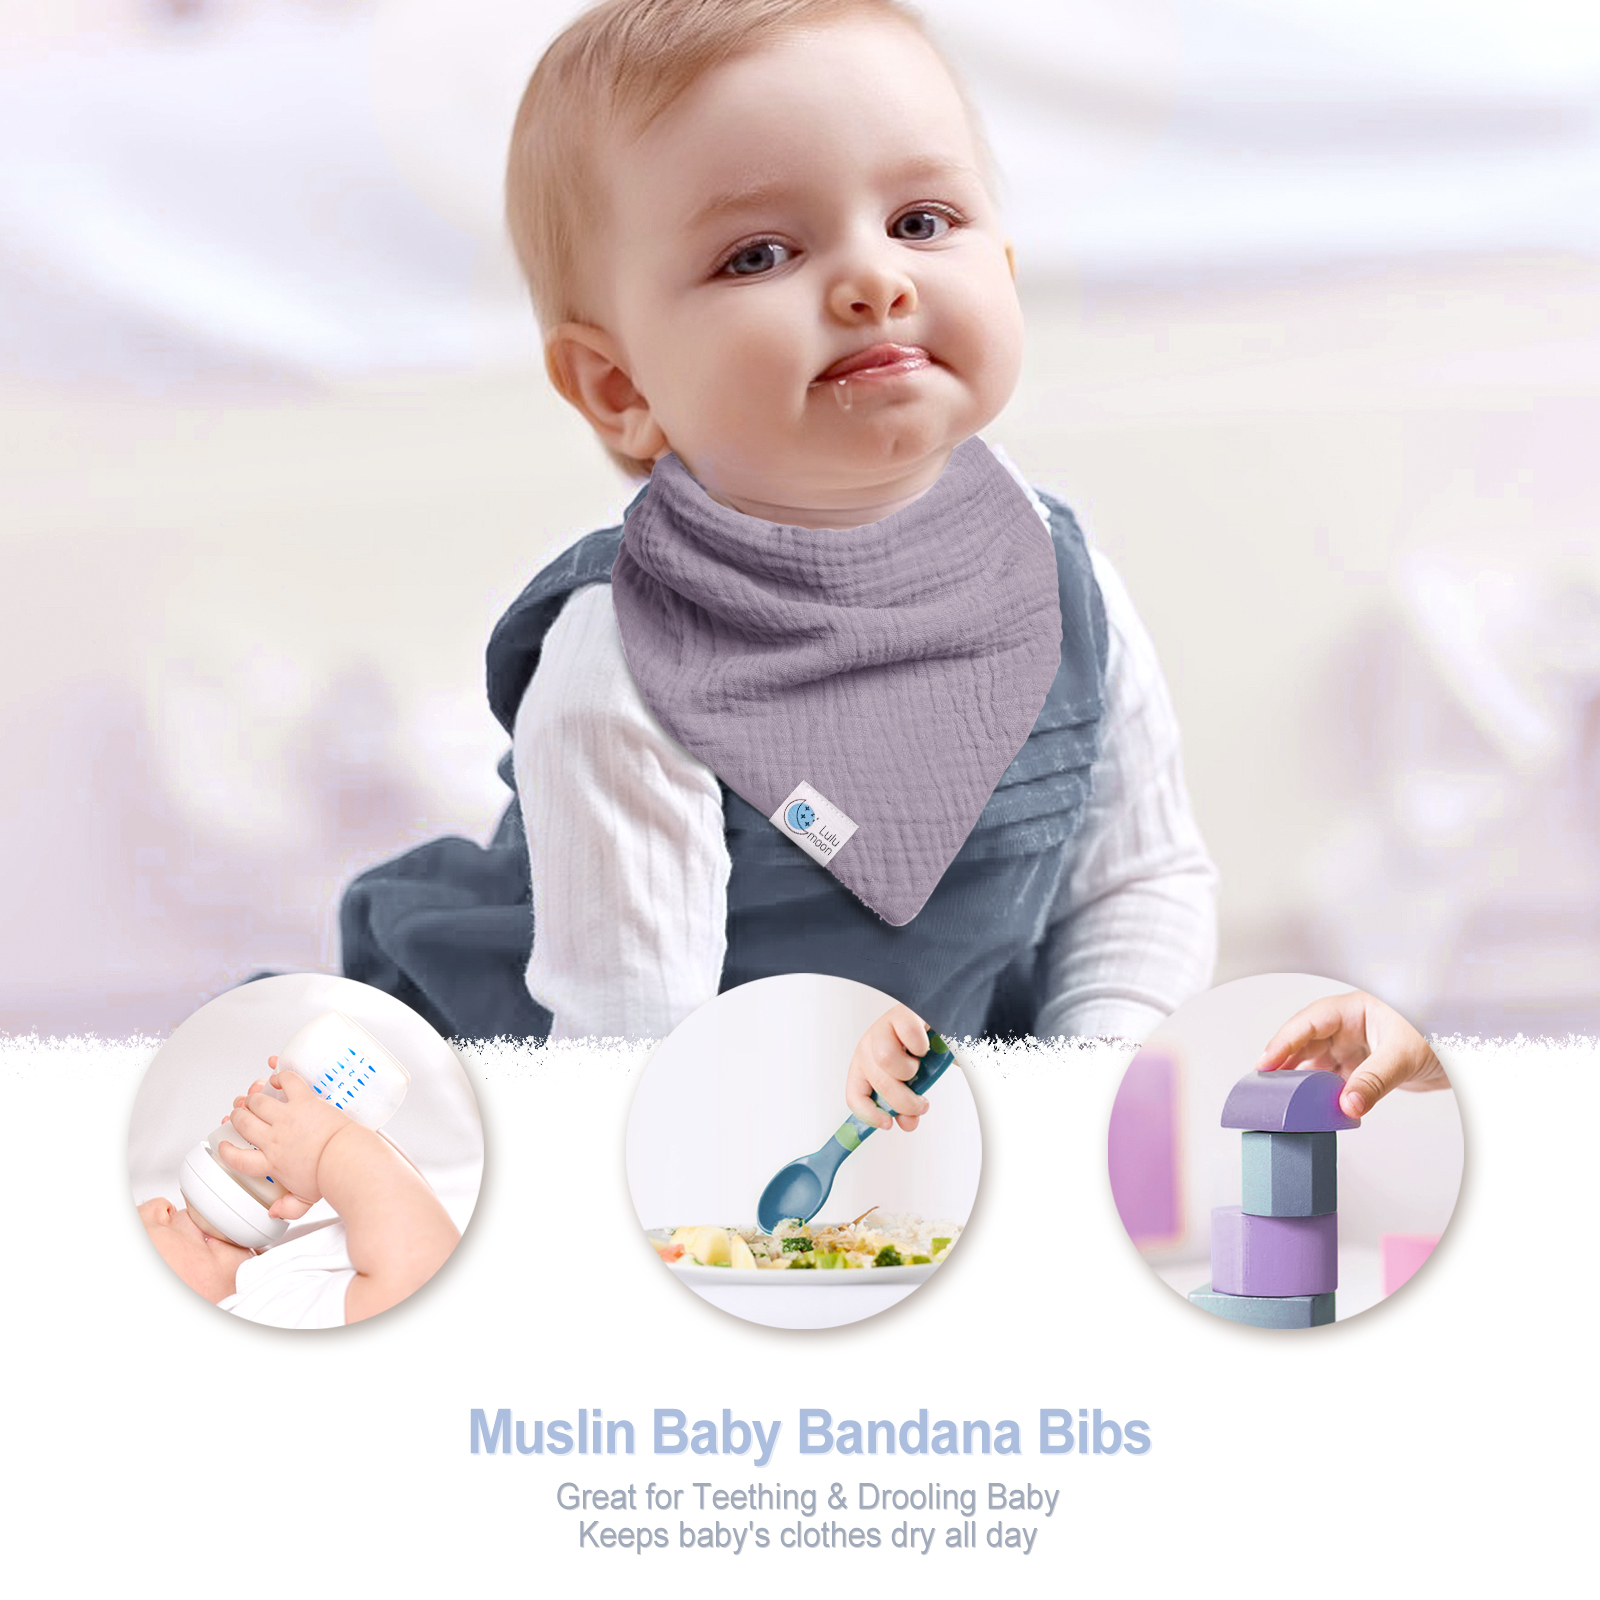 lulumoon Muslin Baby Bandana Bibs – Cotton Drooling Bibs for